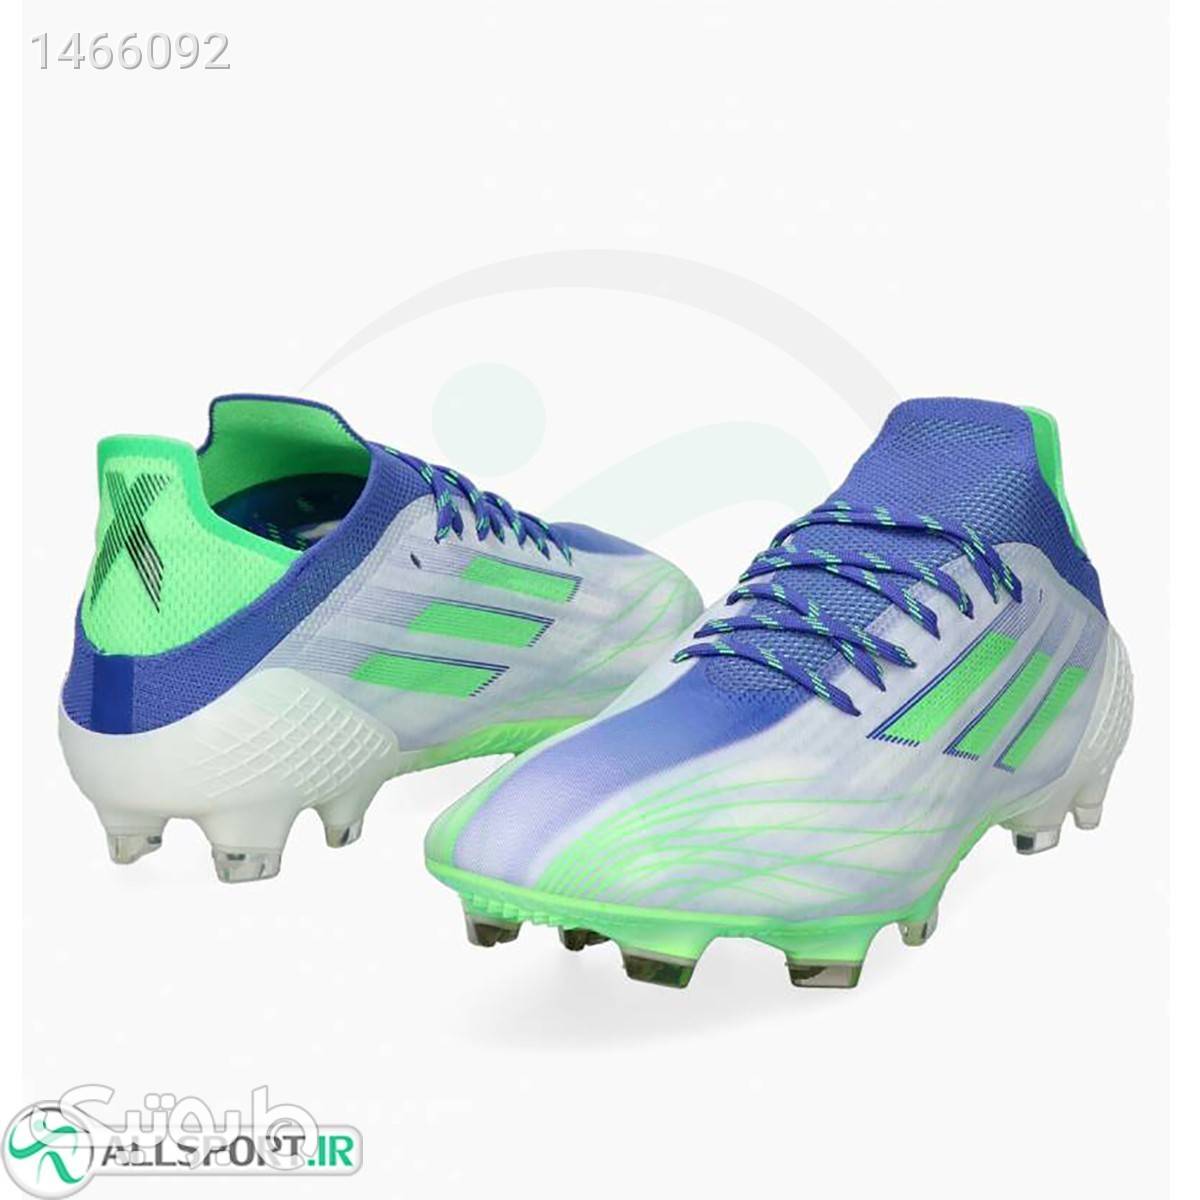 کفش فوتبال آدیداس ایکس طرح اصلیAdidas X Speedfiow blue white Green آبی كتانی مردانه